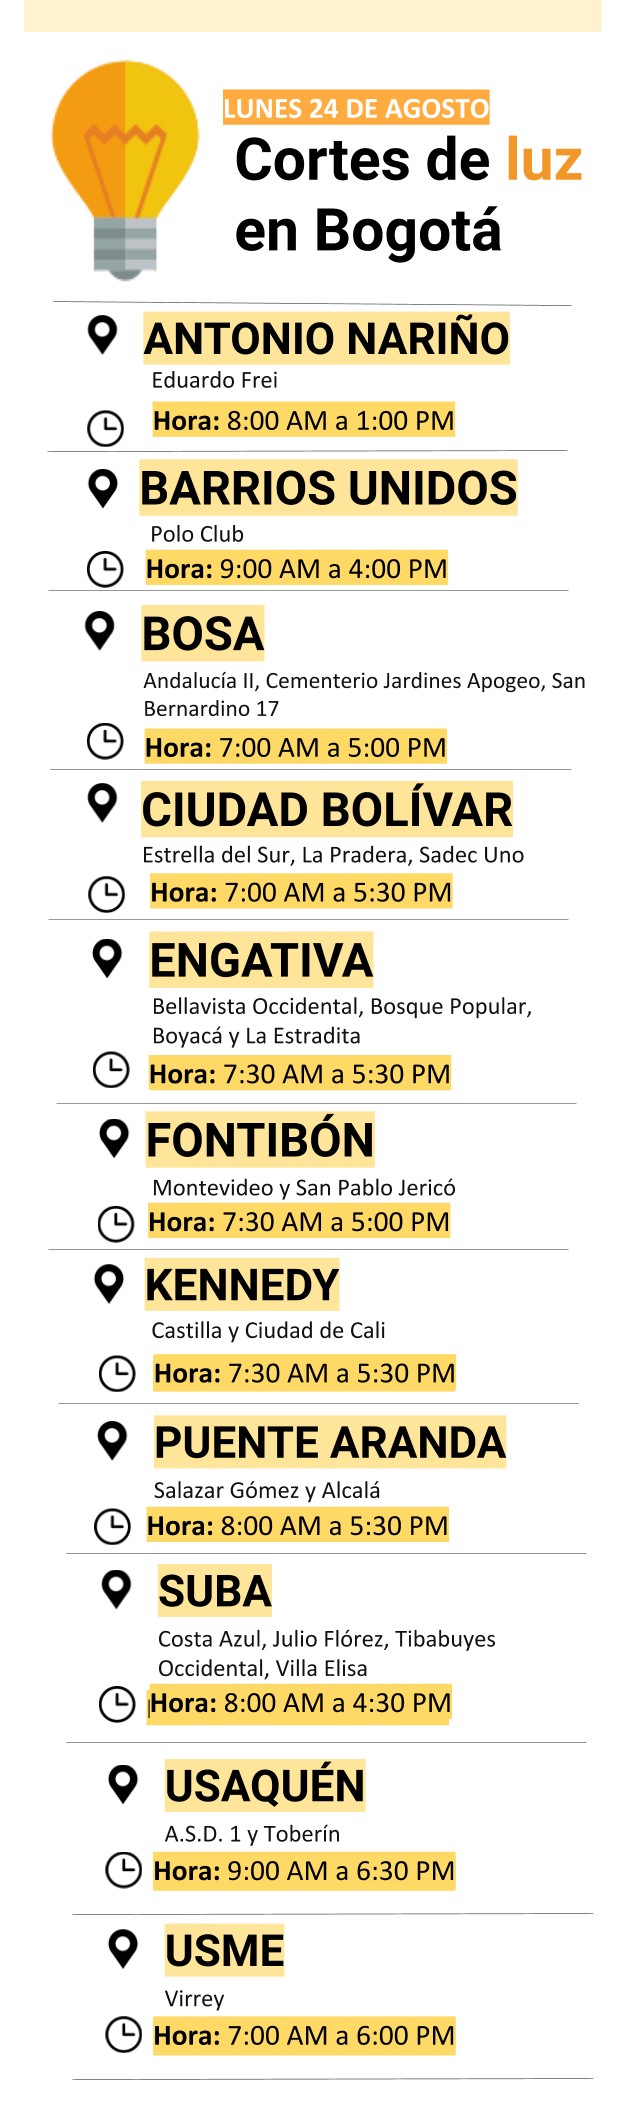 Cortes de luz en Bogotá lunes 24 de agosto